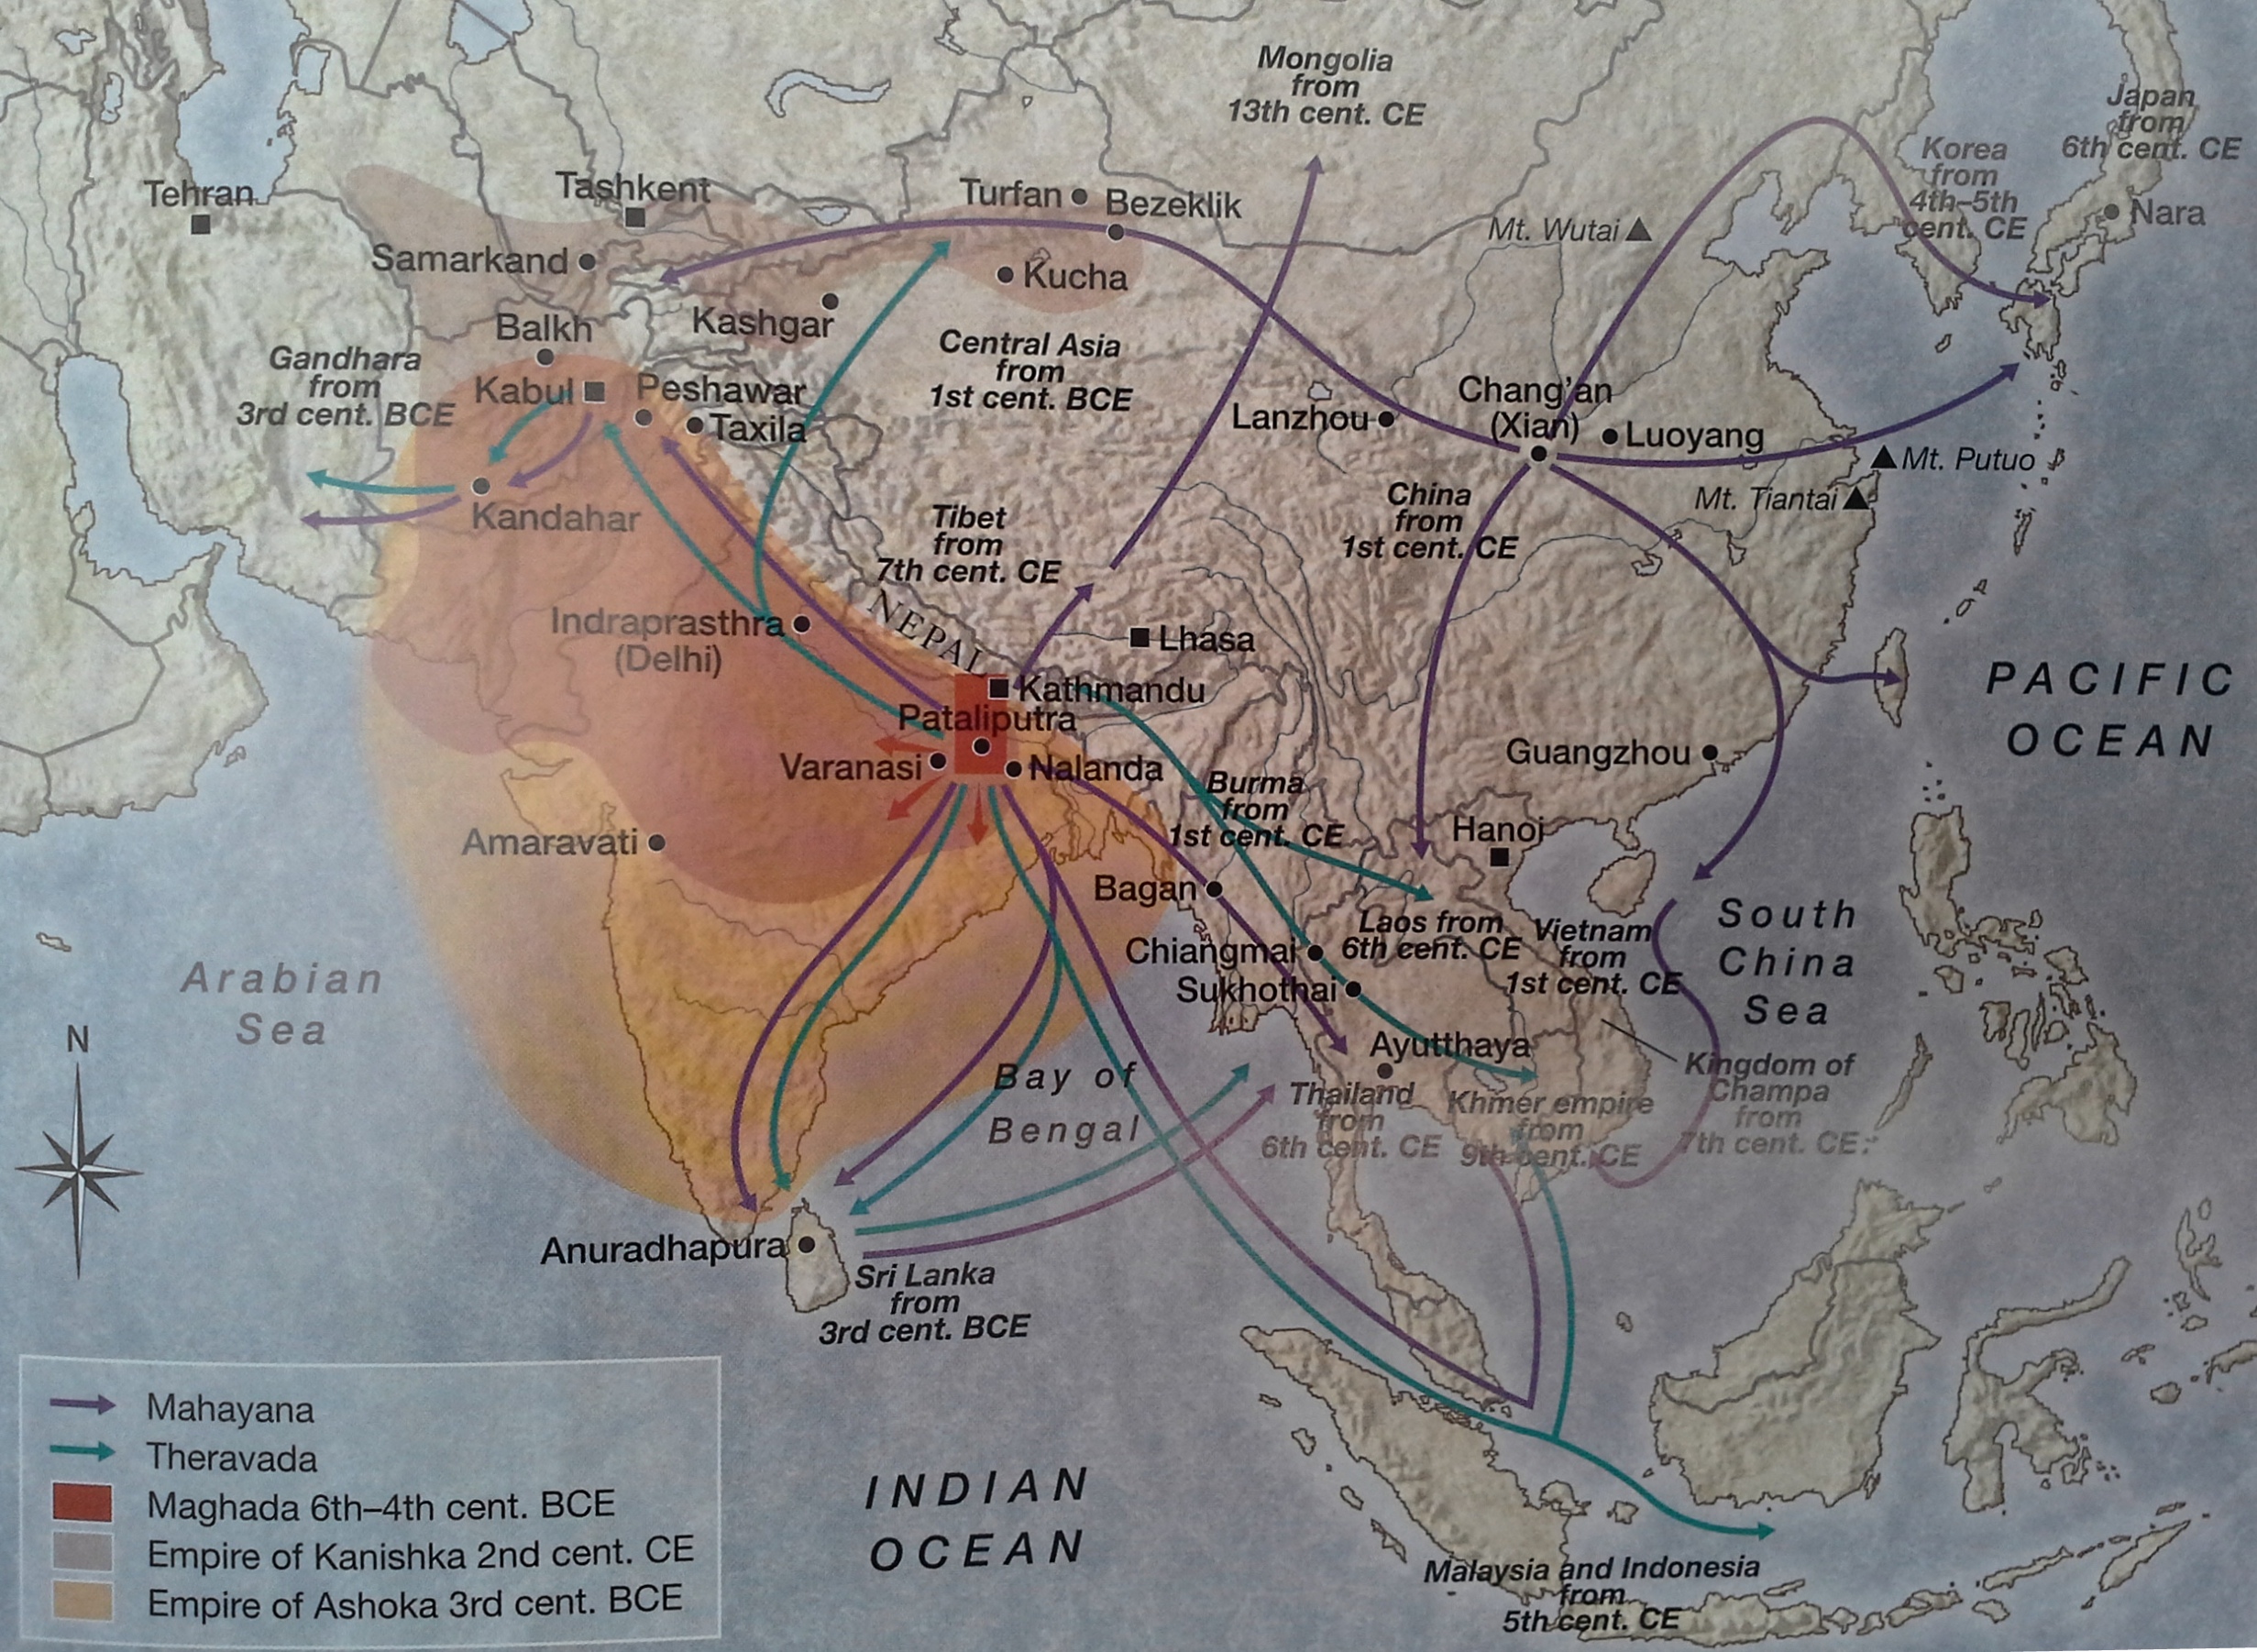 Peta menunjukkan aliran penyebaran Buddha di Asia.